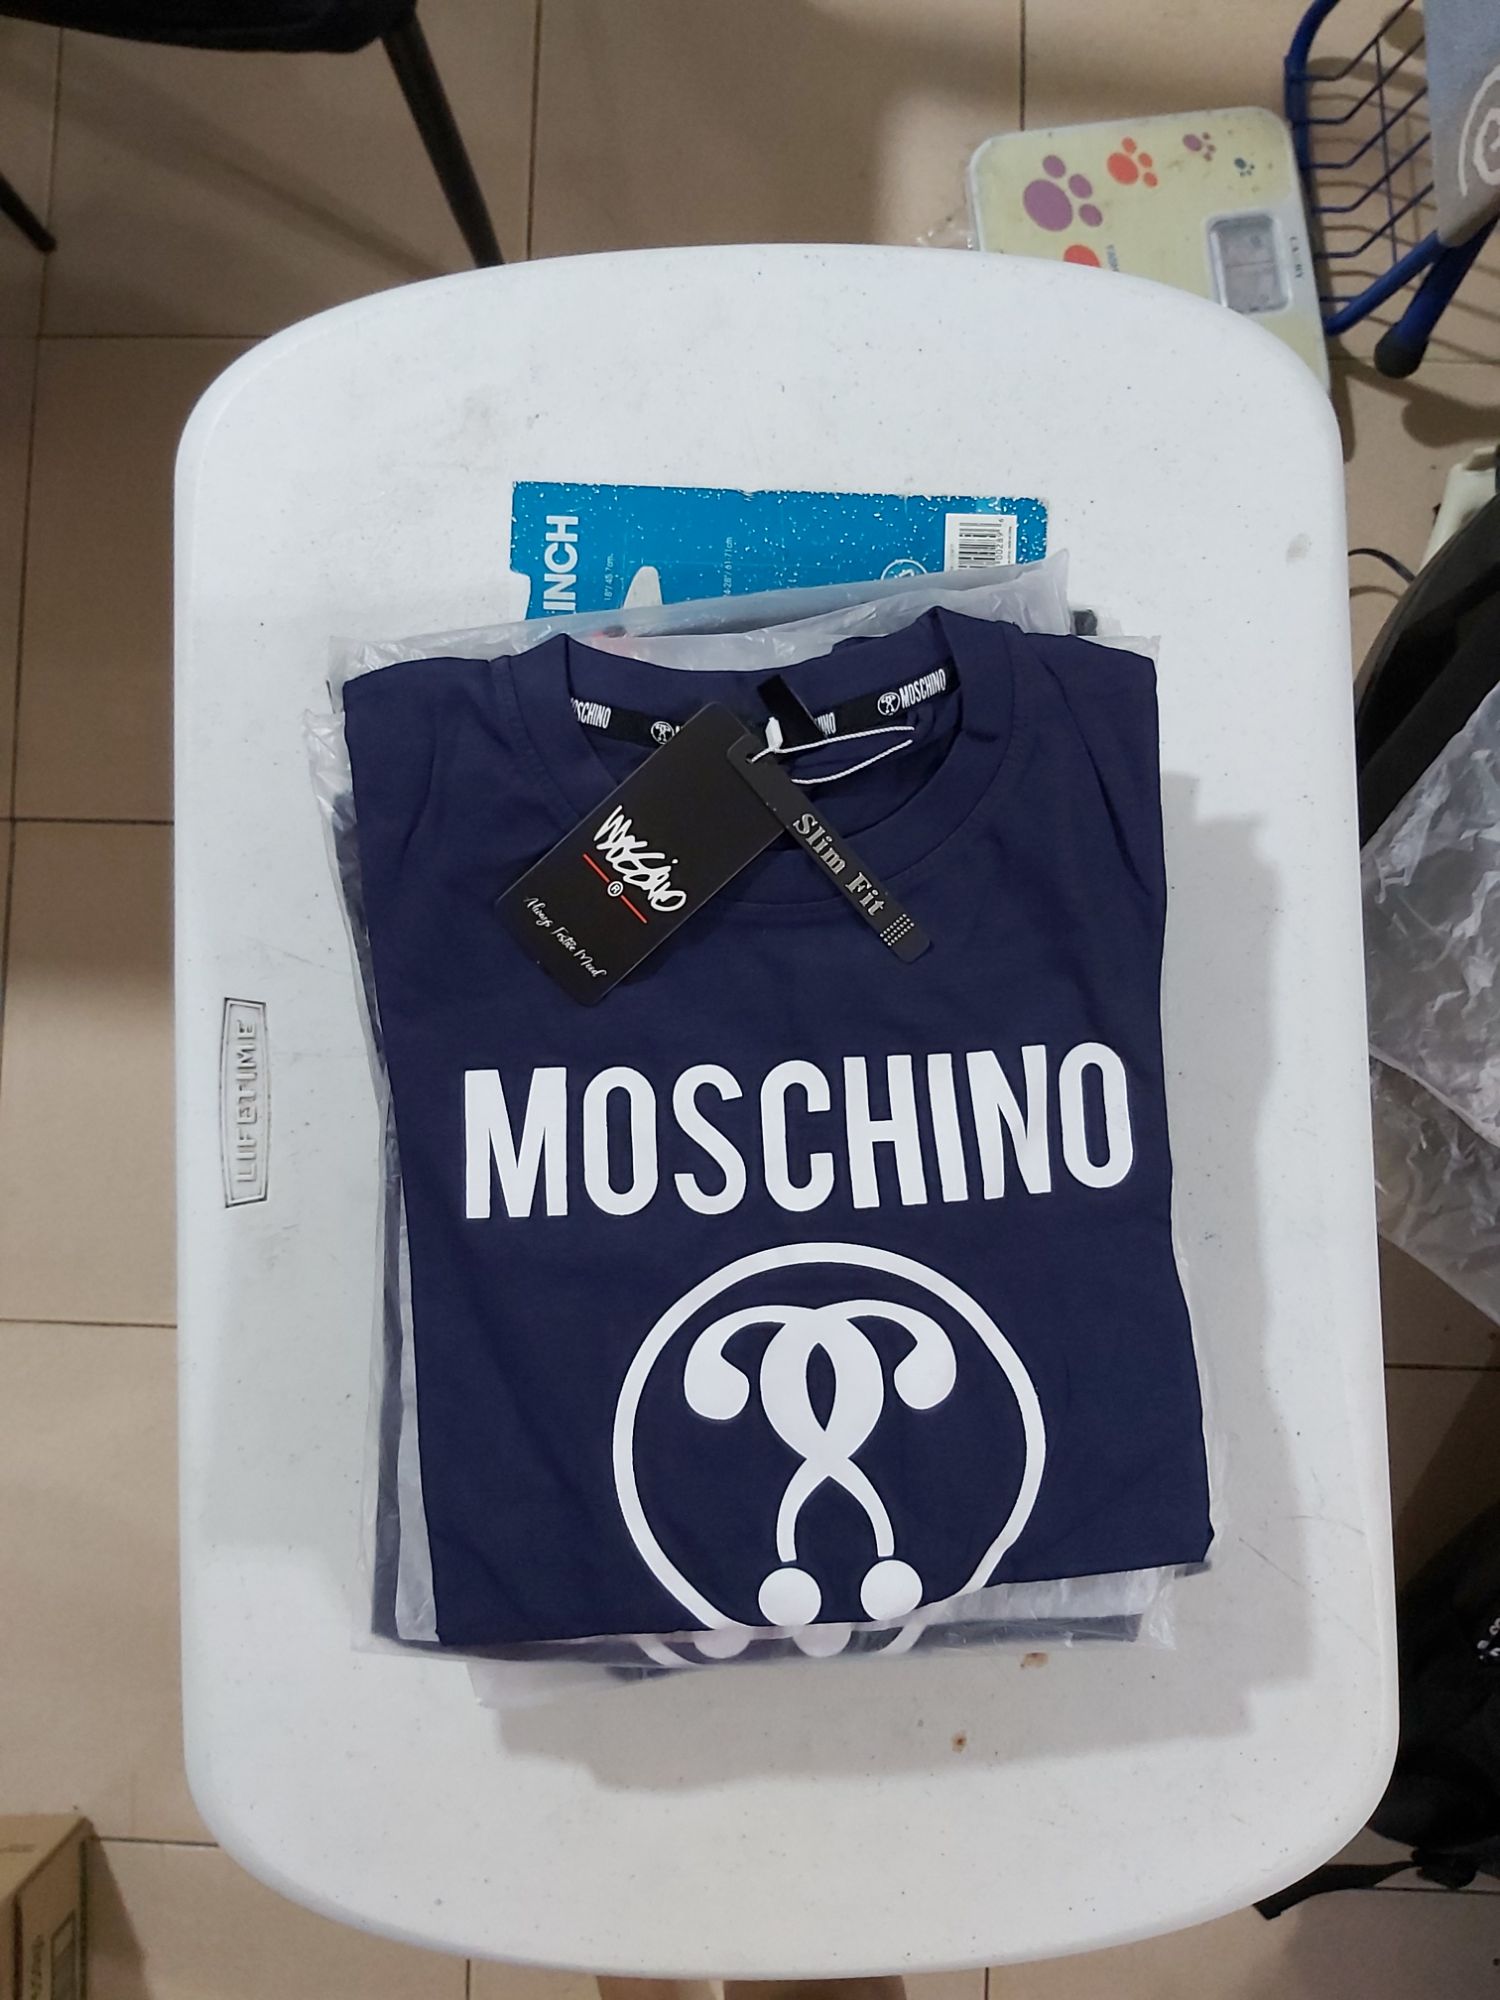 moschino inspired shirt